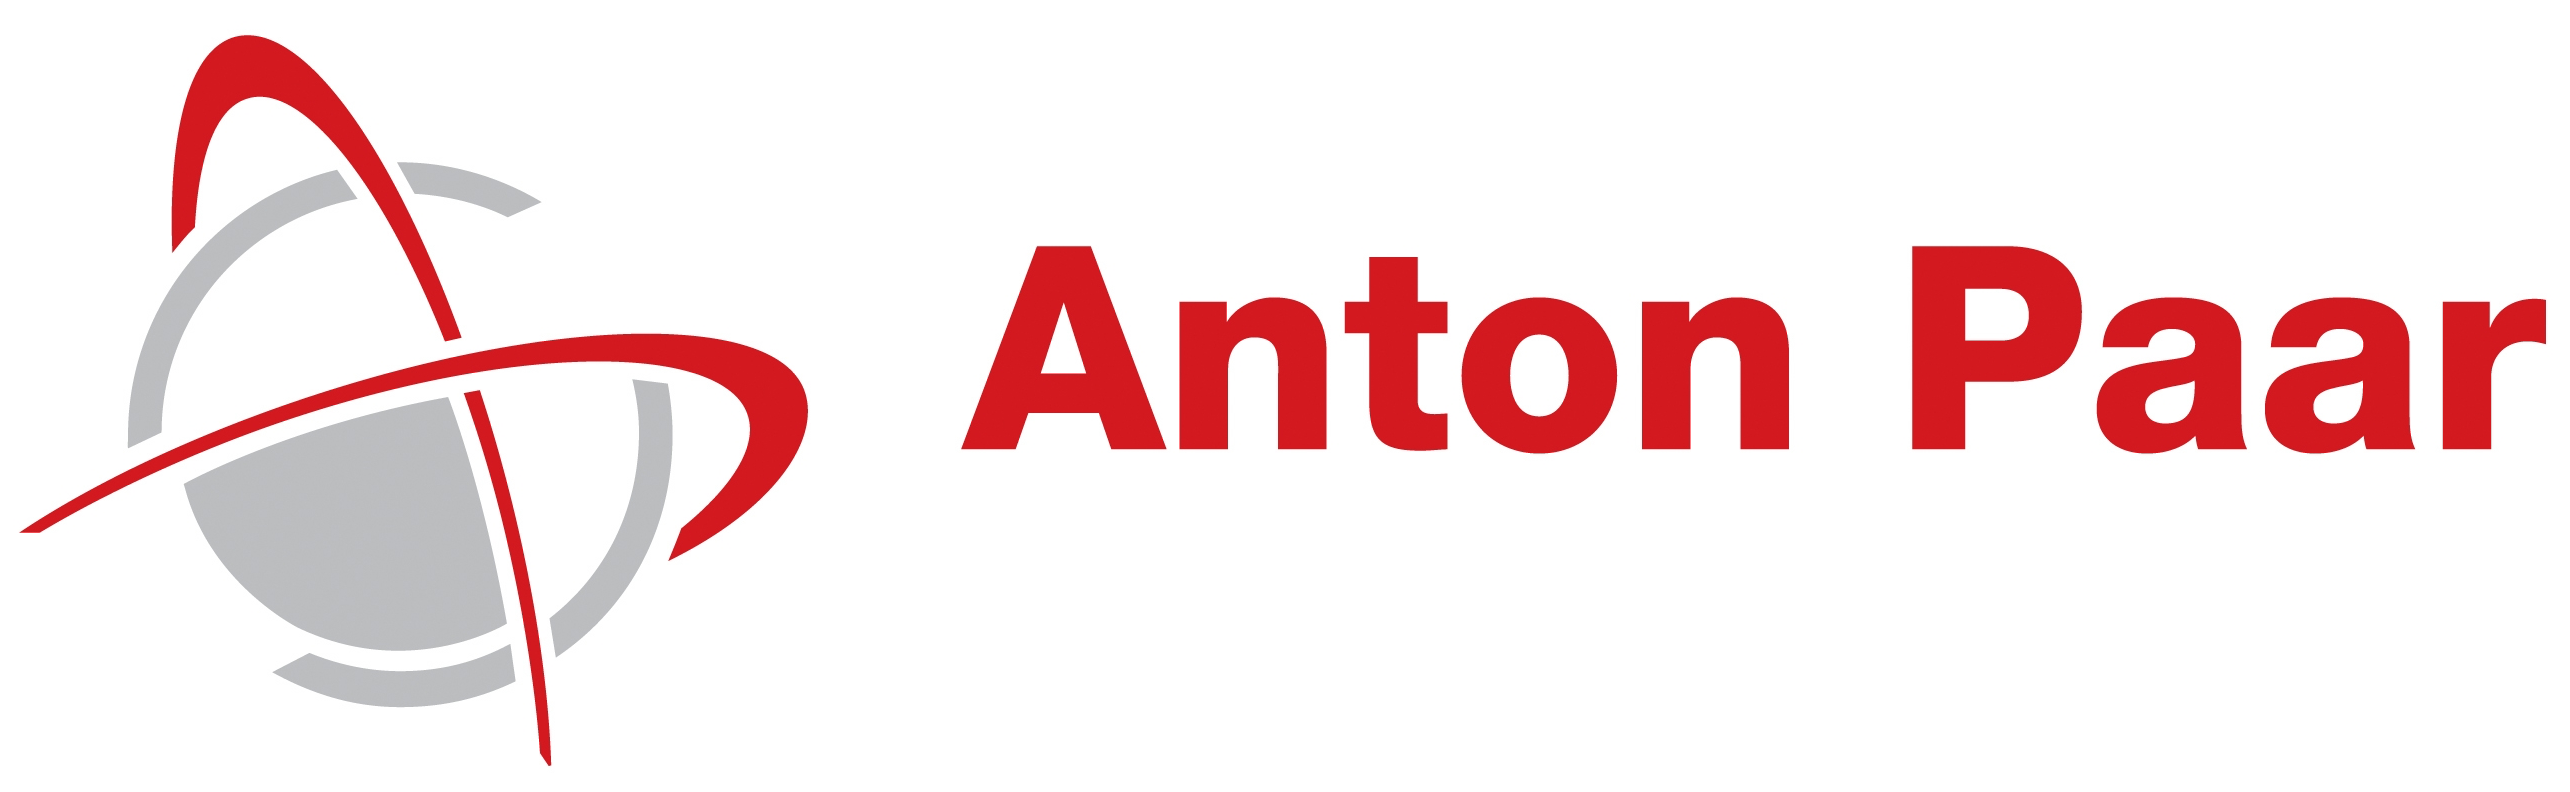 Anton_Paar_Logo_petit_1.png